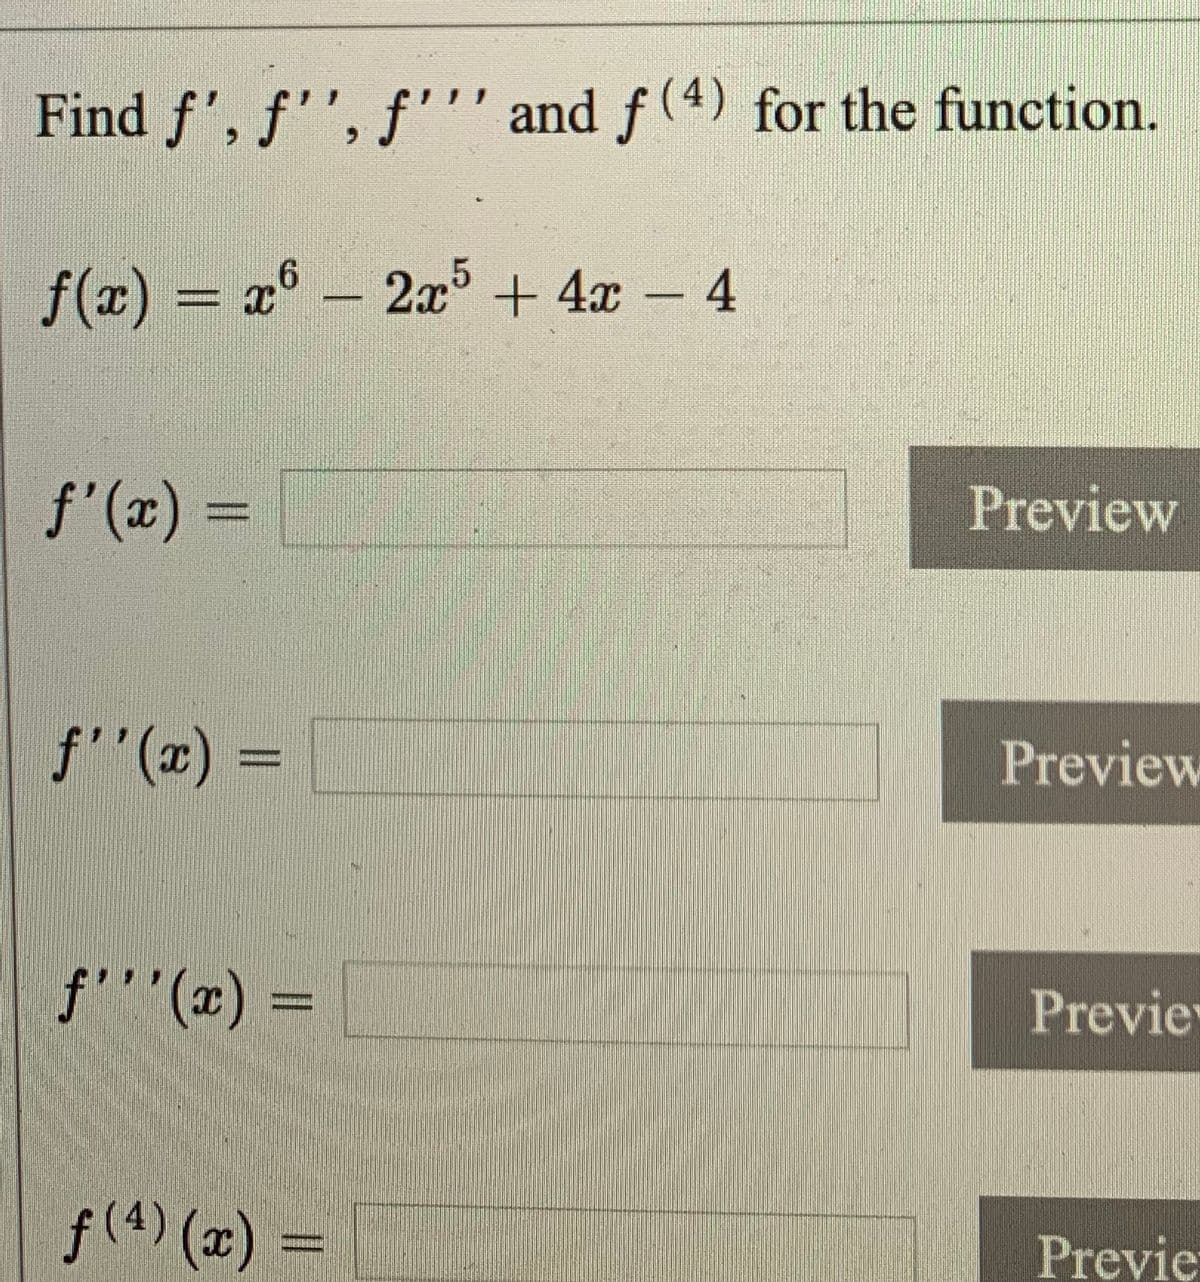 Find f', f'', f''' and f (4) for the function.
f(x) = x° - 2x + 4x – 4
f'(x) =
Preview
%3D
f"(x) :
Preview
f'''(x) =
Previe
f(4) (x)
Previe
